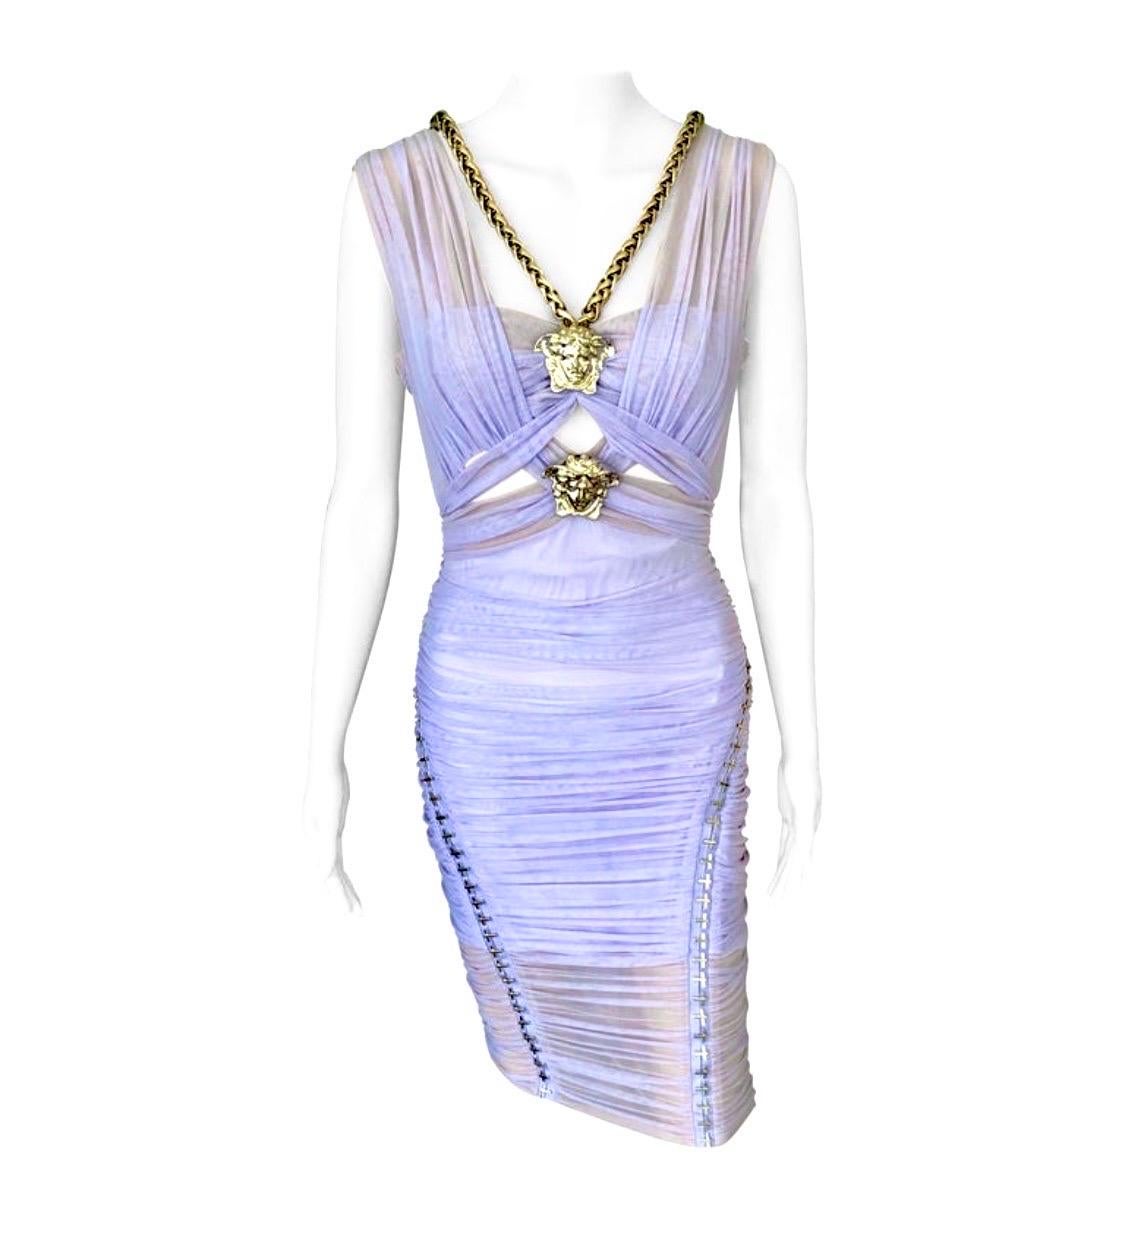 Versace S/S 2014 Runway Medusa und Kette verschönert Ausschnitt halbdurchsichtigen gerafften Kleid IT 40

Look 17 aus der Frühjahrskollektion 2014. Zu sehen in der Versace-Frühjahrskampagne 2014. 

Knielanges, lavendelfarbenes Kleid von Versace mit